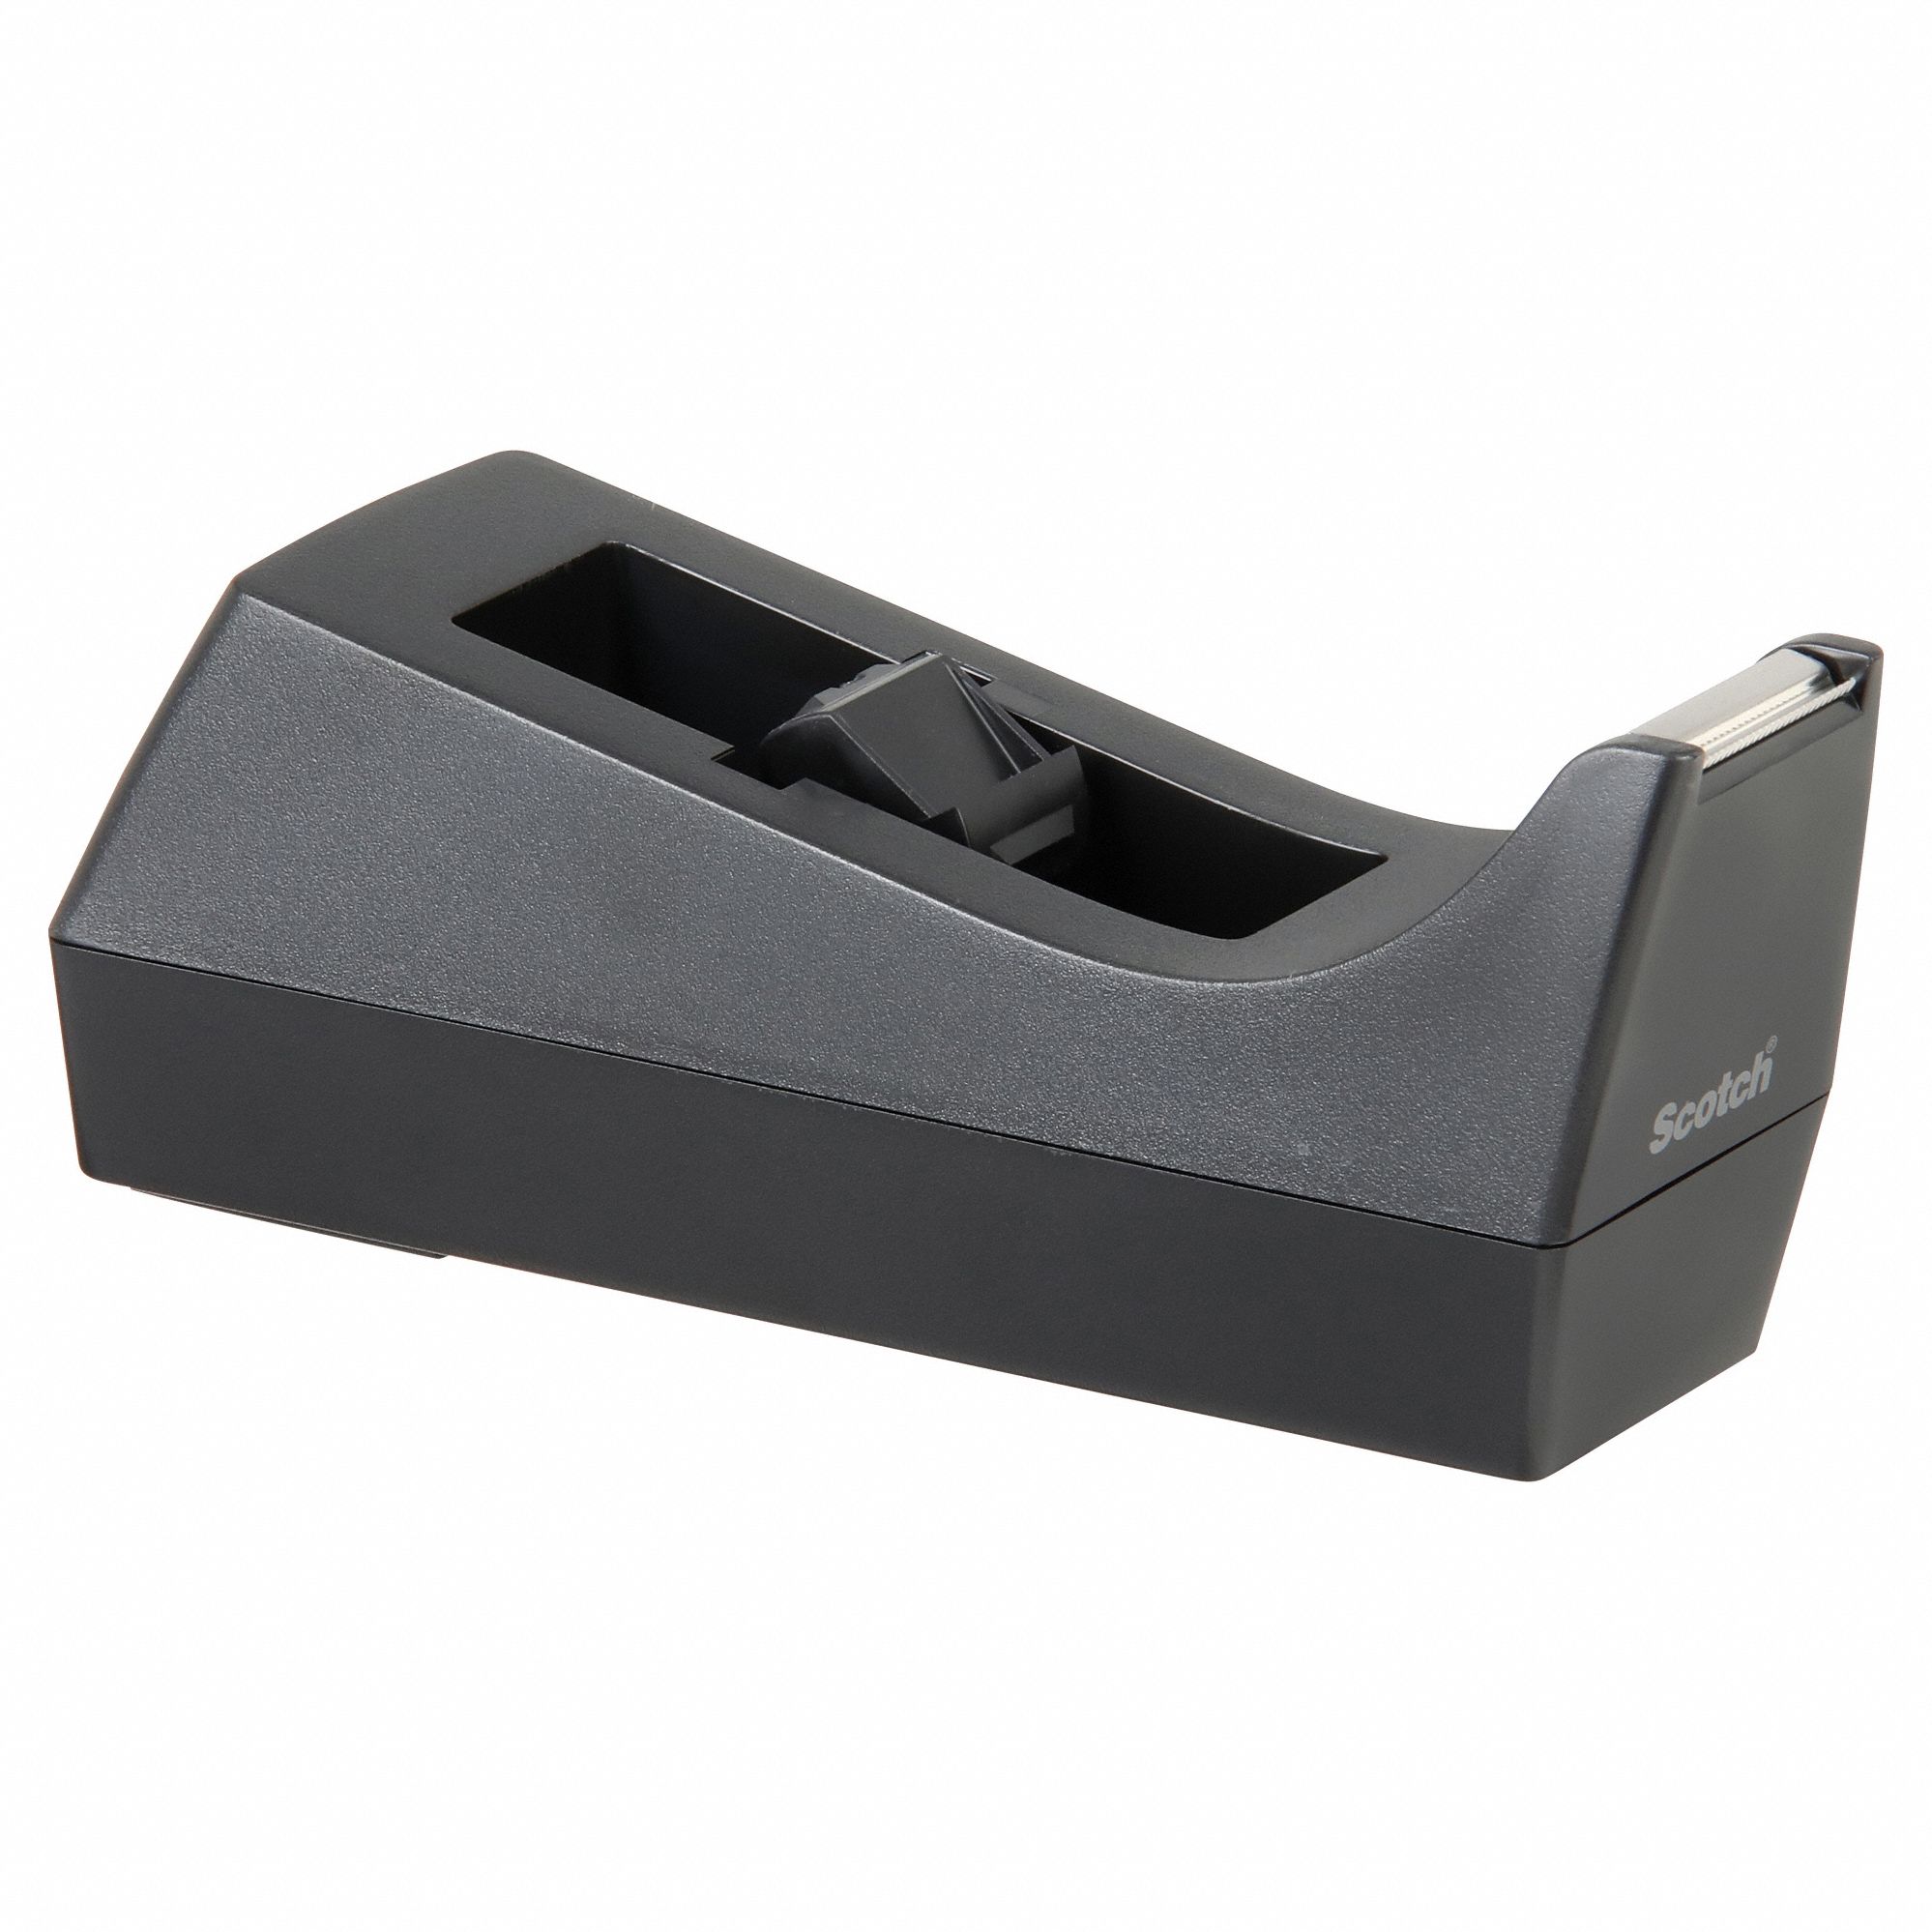 Basics Office Desk Tape Dispenser - 3-Pack